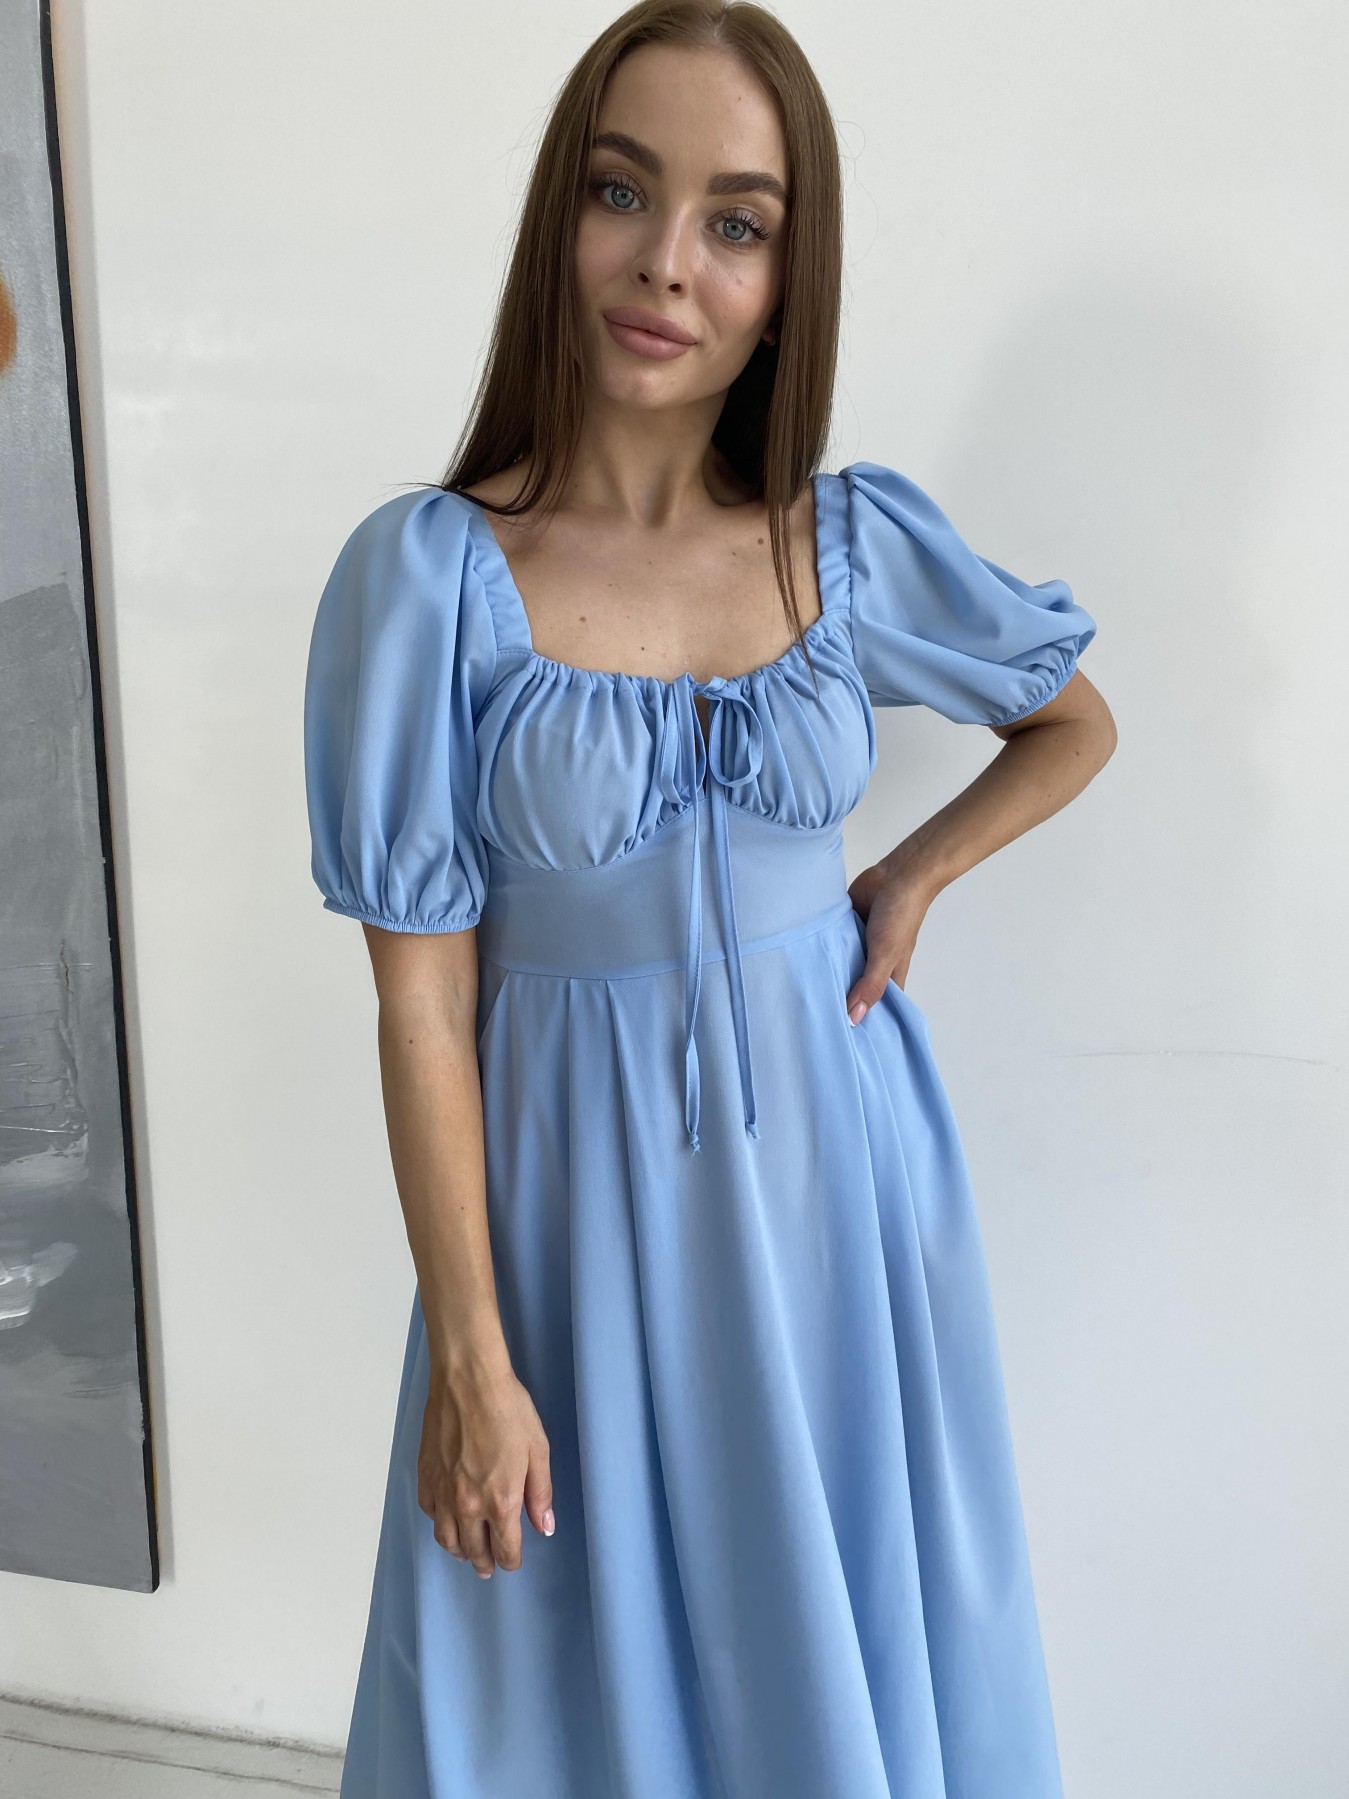 Кисес Миди платье из шифона креп 11443 АРТ. 48206 Цвет: Голубой 18 - фото 6, интернет магазин tm-modus.ru